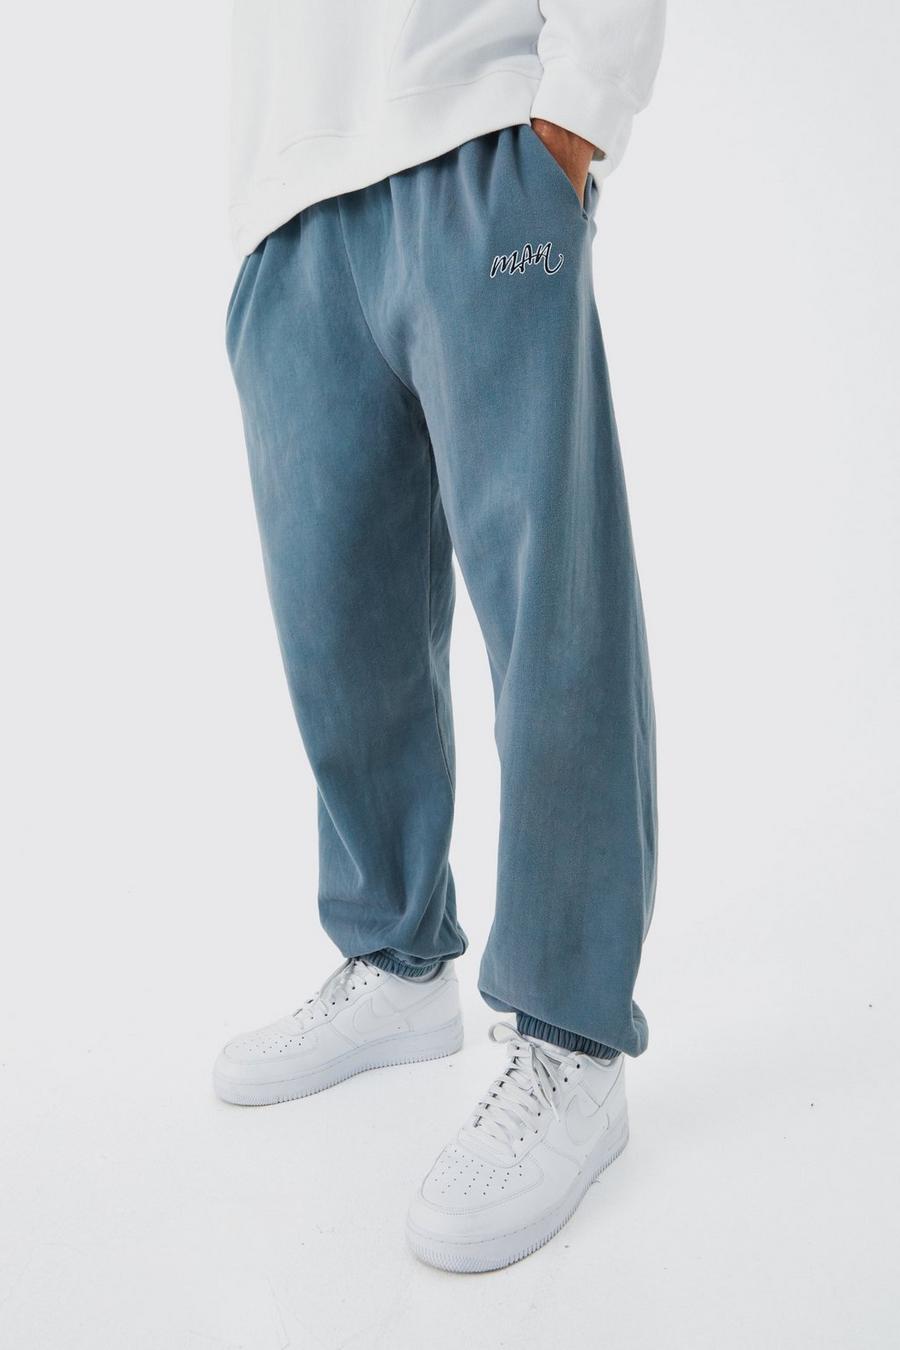 Pantalón deportivo oversize con firma MAN desteñido, Charcoal